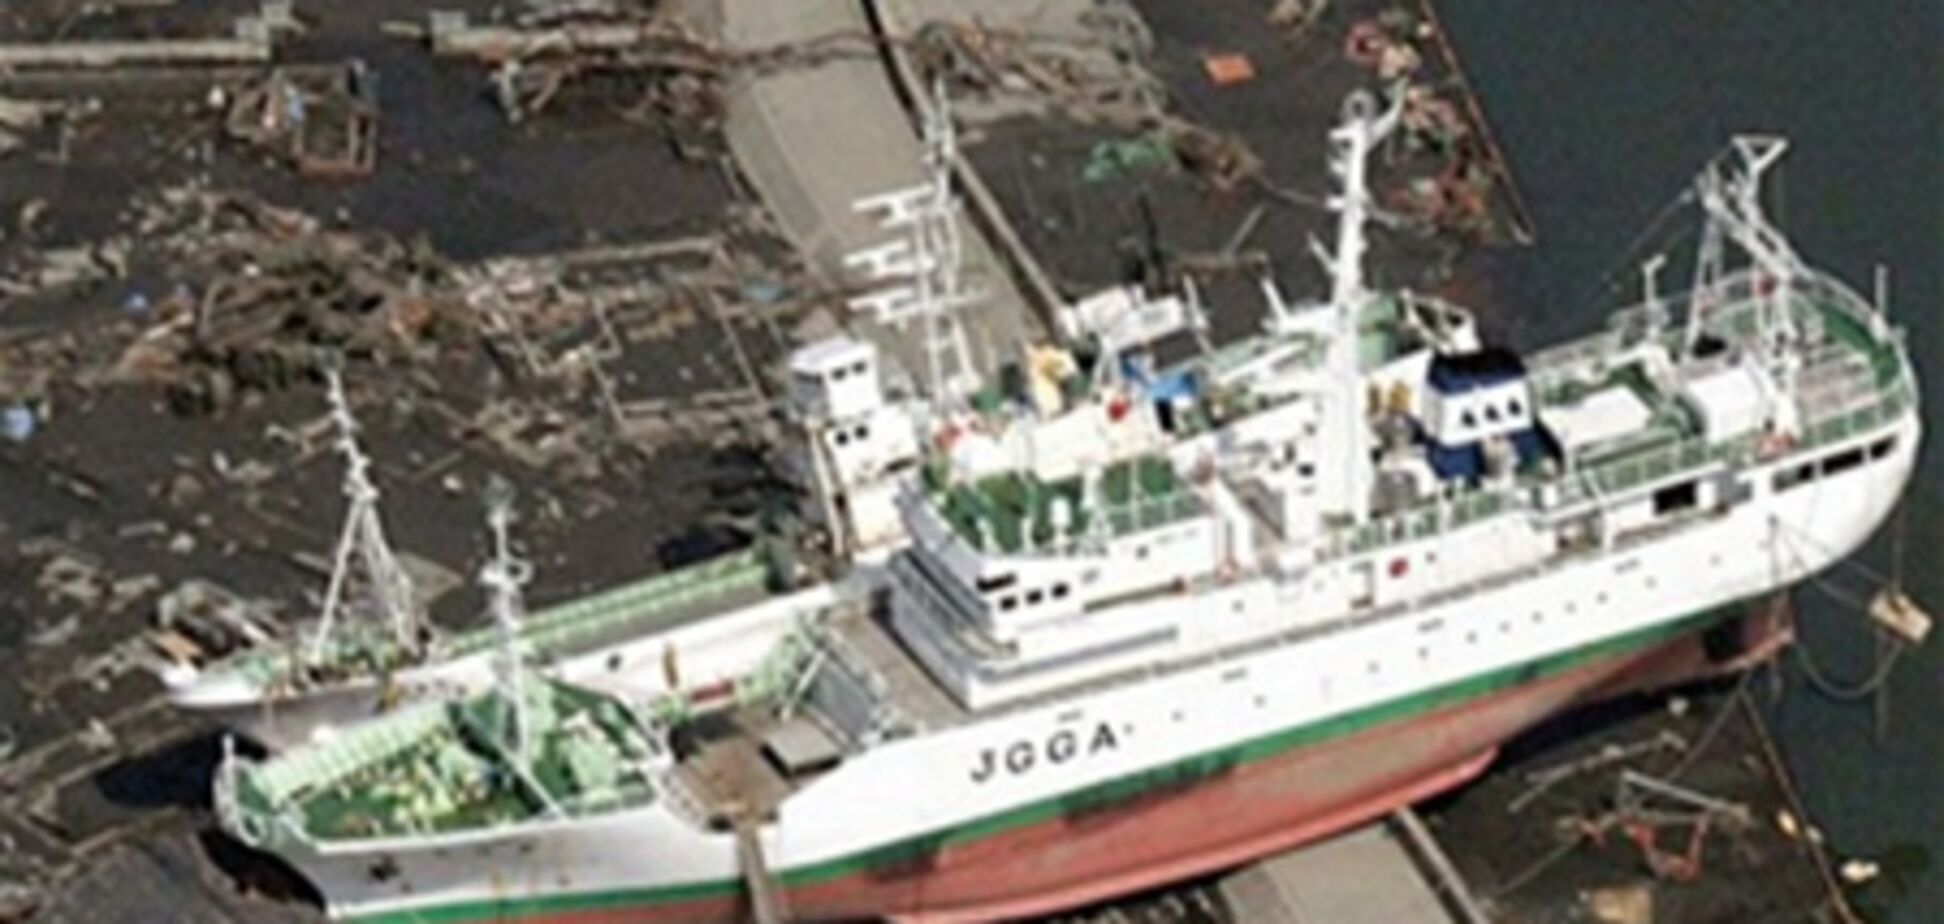 Фотографии кораблей, выброшенных на сушу цунами в Японии